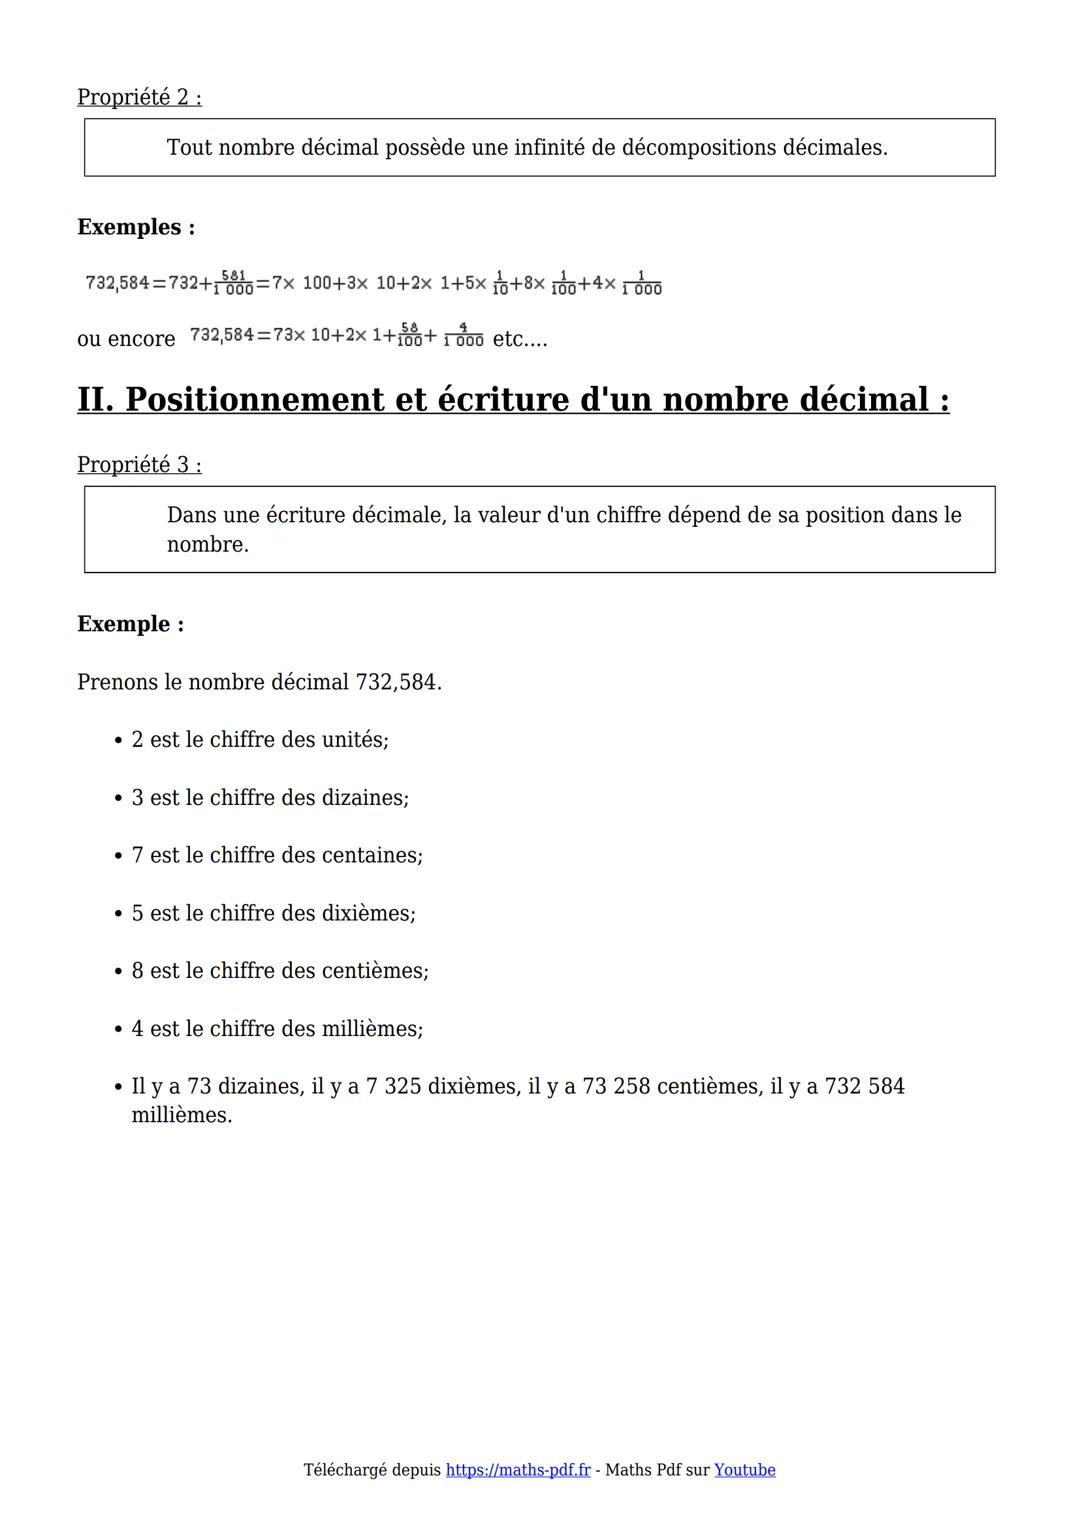 cours 6ème
Maths PDF
Créer telecharger imprimeren POP
I. Définitions et vocabulaire sur les nombres décimaux :
Définition 1:
0
Nombres décim